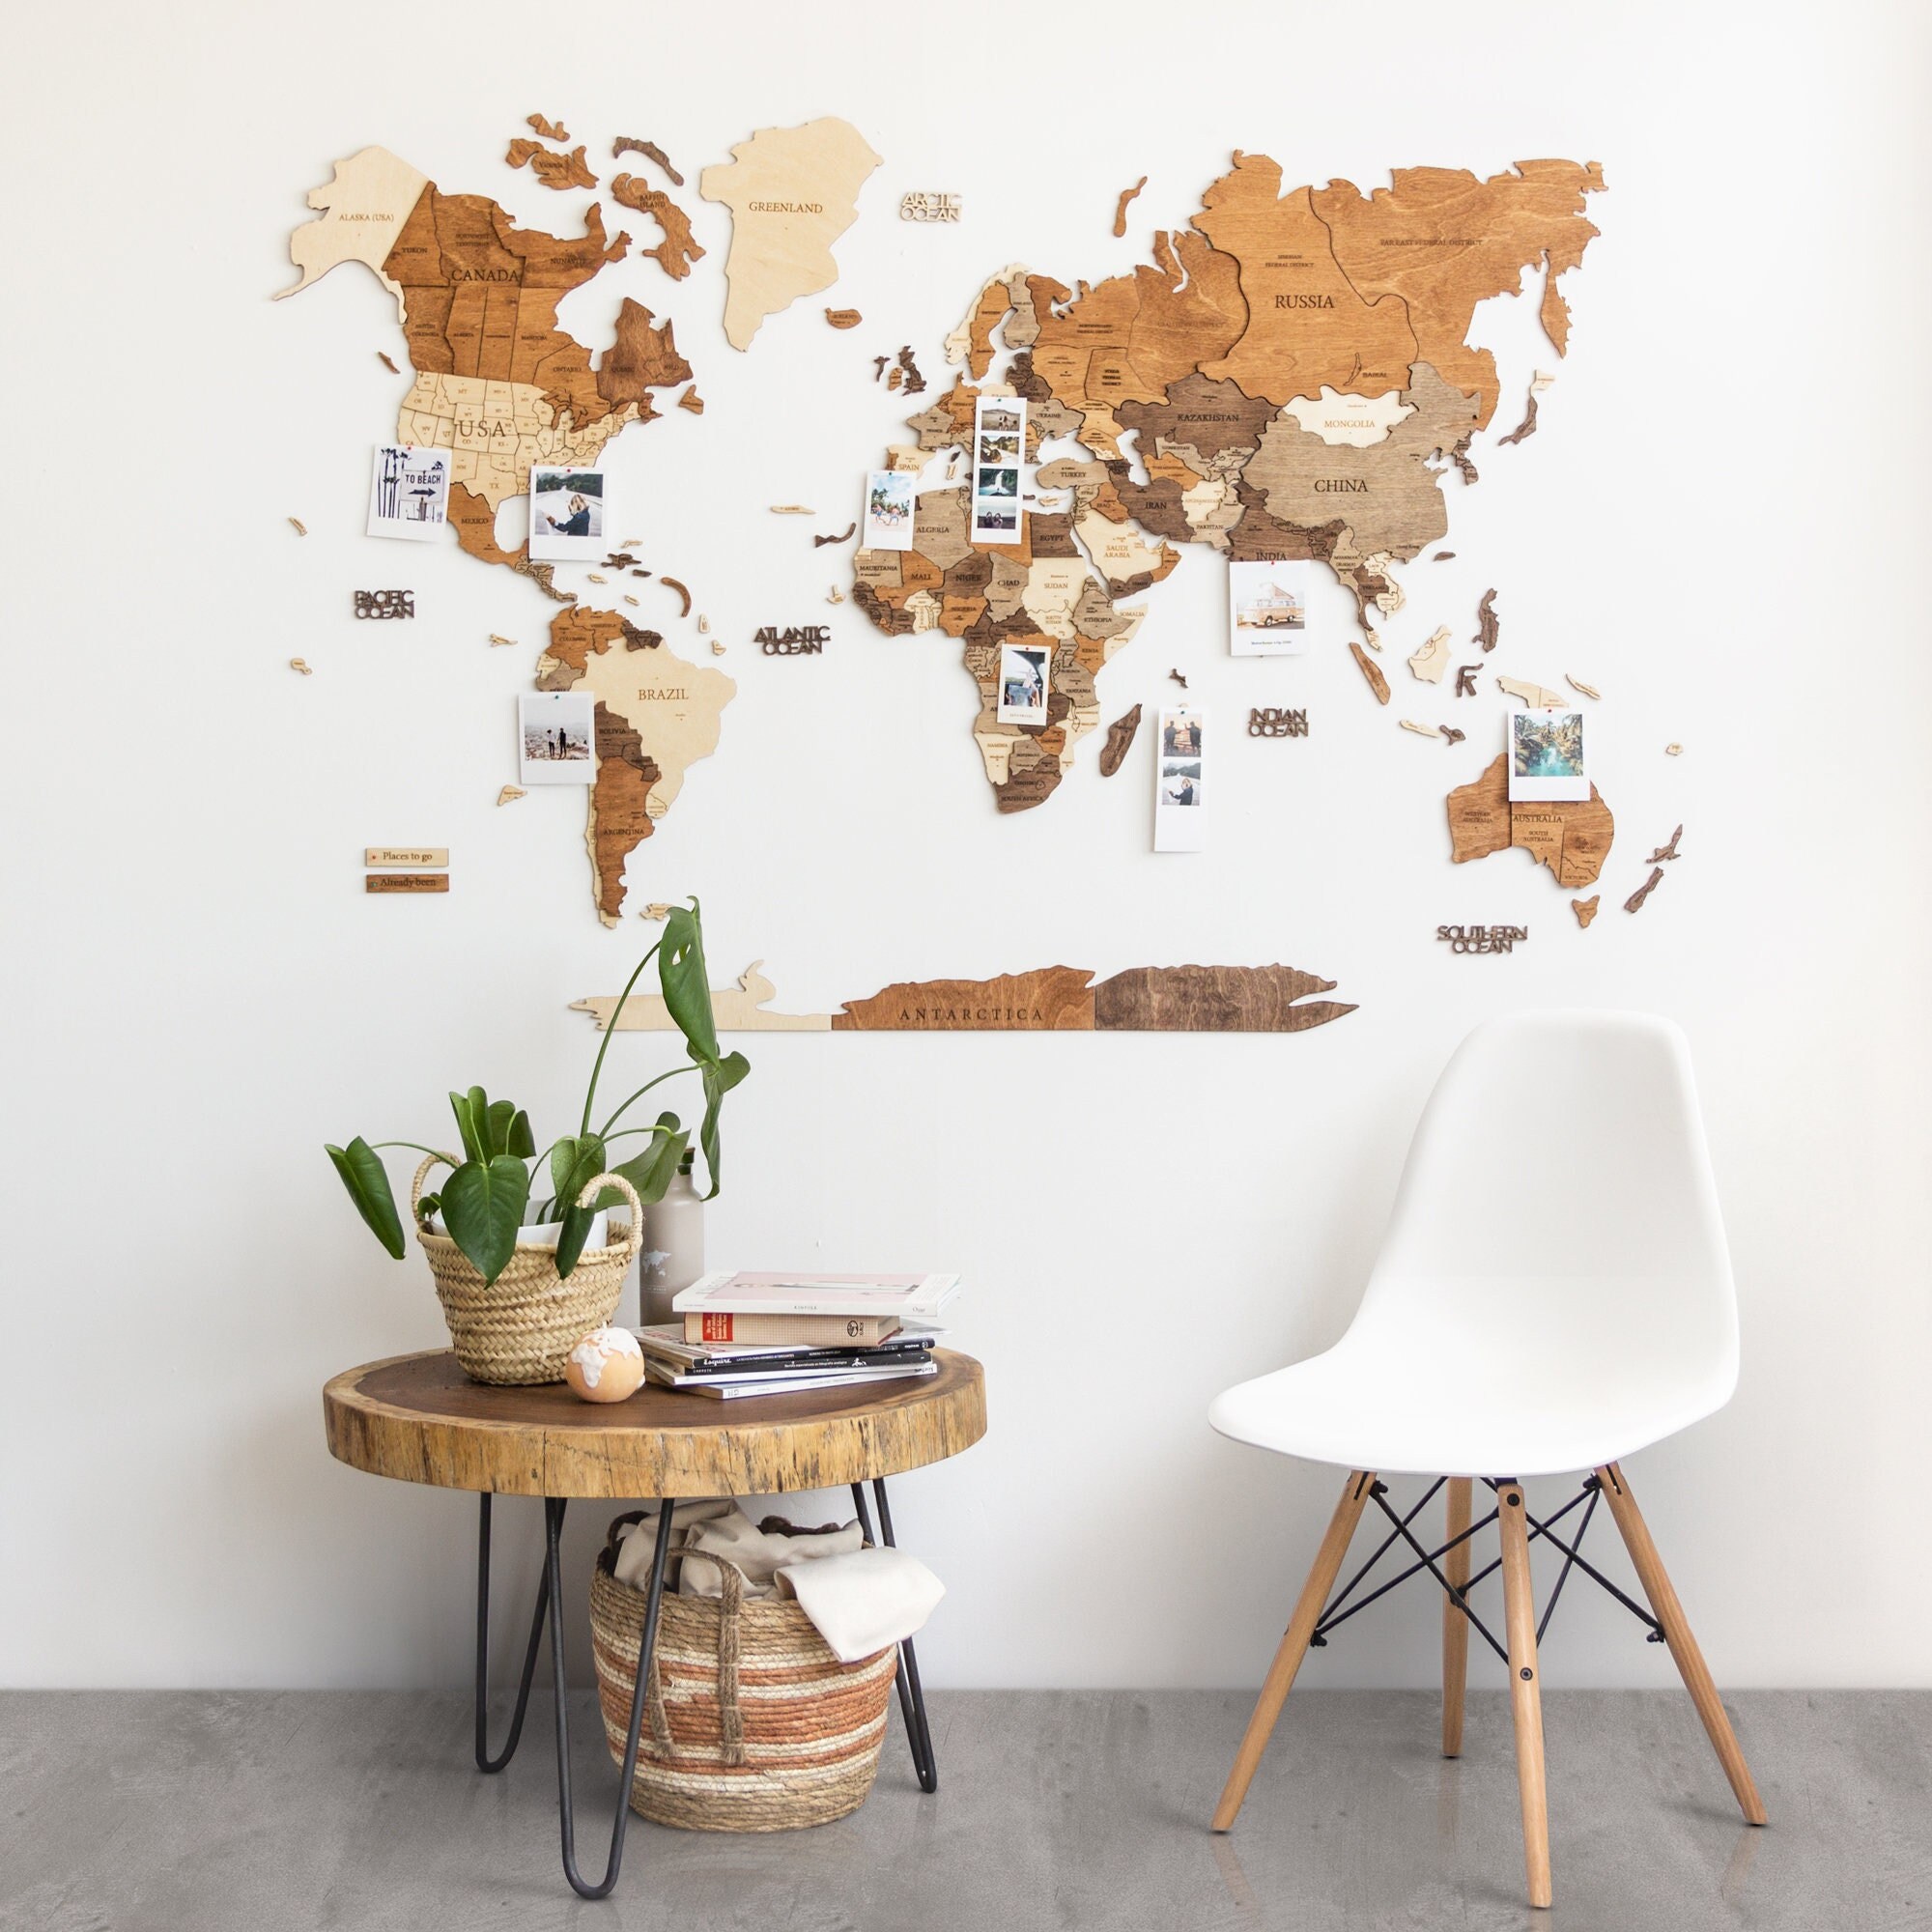 Mapa del mundo de madera para decoración del hogar, multicapa, madera  teñida multicolor, nombres grabados, diseño 3D único, para sala de estar